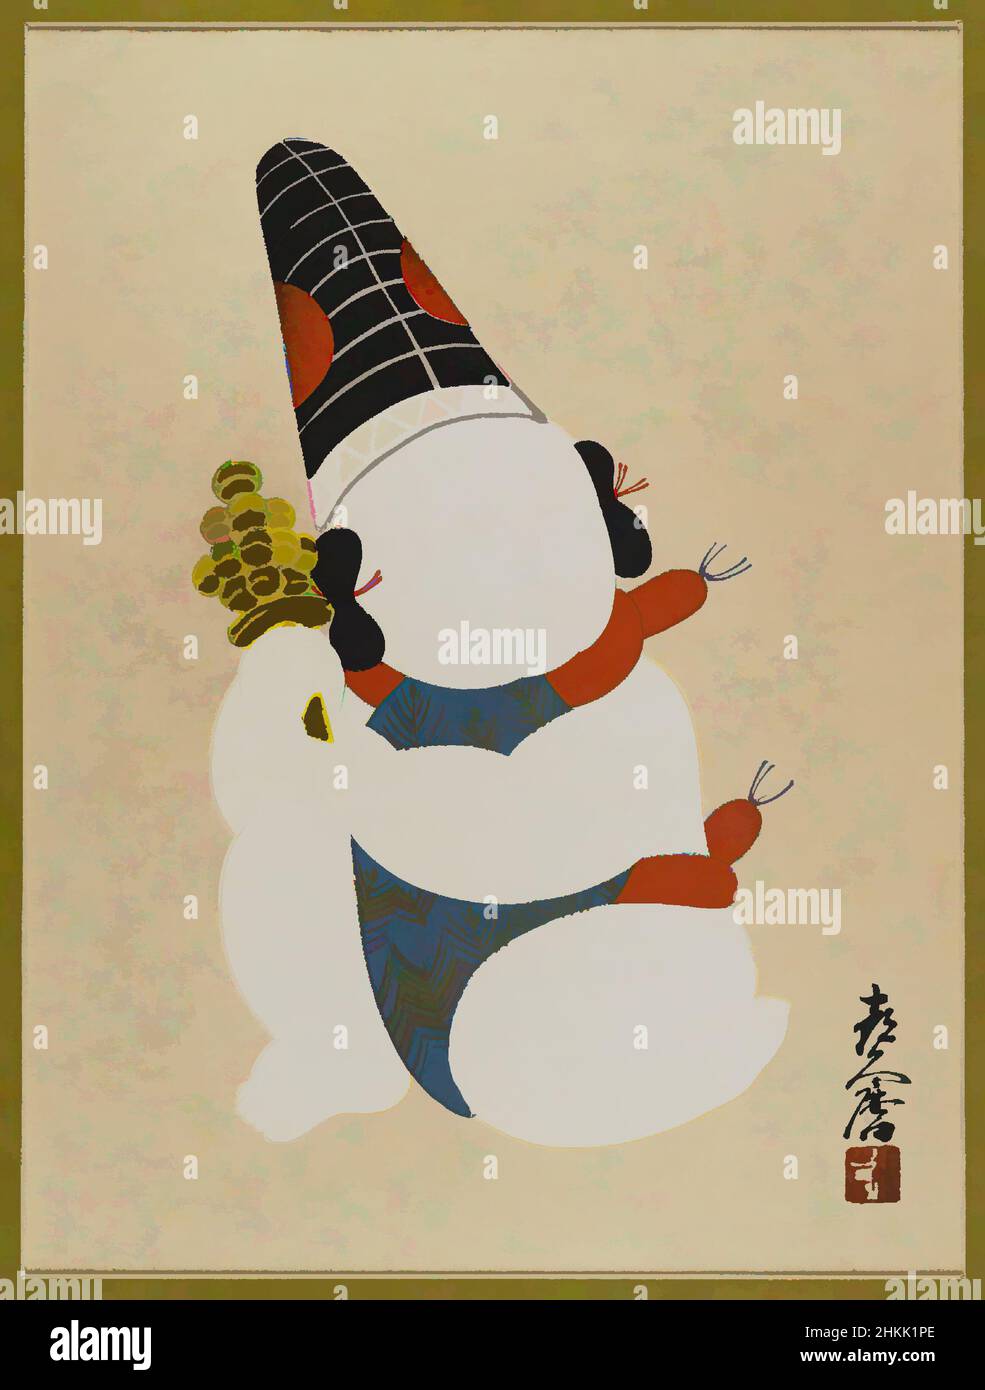 Kunst inspiriert von Doll aus Izukura, Farbholzschnitt mit Gold auf Papier, Japan, 1933, Showa-Zeit, 16 1/2 x 13 Zoll, 41,9 x 33 cm, Klassisches Werk, modernisiert von Artotop mit einem Schuss Moderne. Formen, Farbe und Wert, auffällige visuelle Wirkung auf Kunst. Emotionen durch Freiheit von Kunstwerken auf zeitgemäße Weise. Eine zeitlose Botschaft, die eine wild kreative neue Richtung verfolgt. Künstler, die sich dem digitalen Medium zuwenden und die Artotop NFT erschaffen Stockfoto